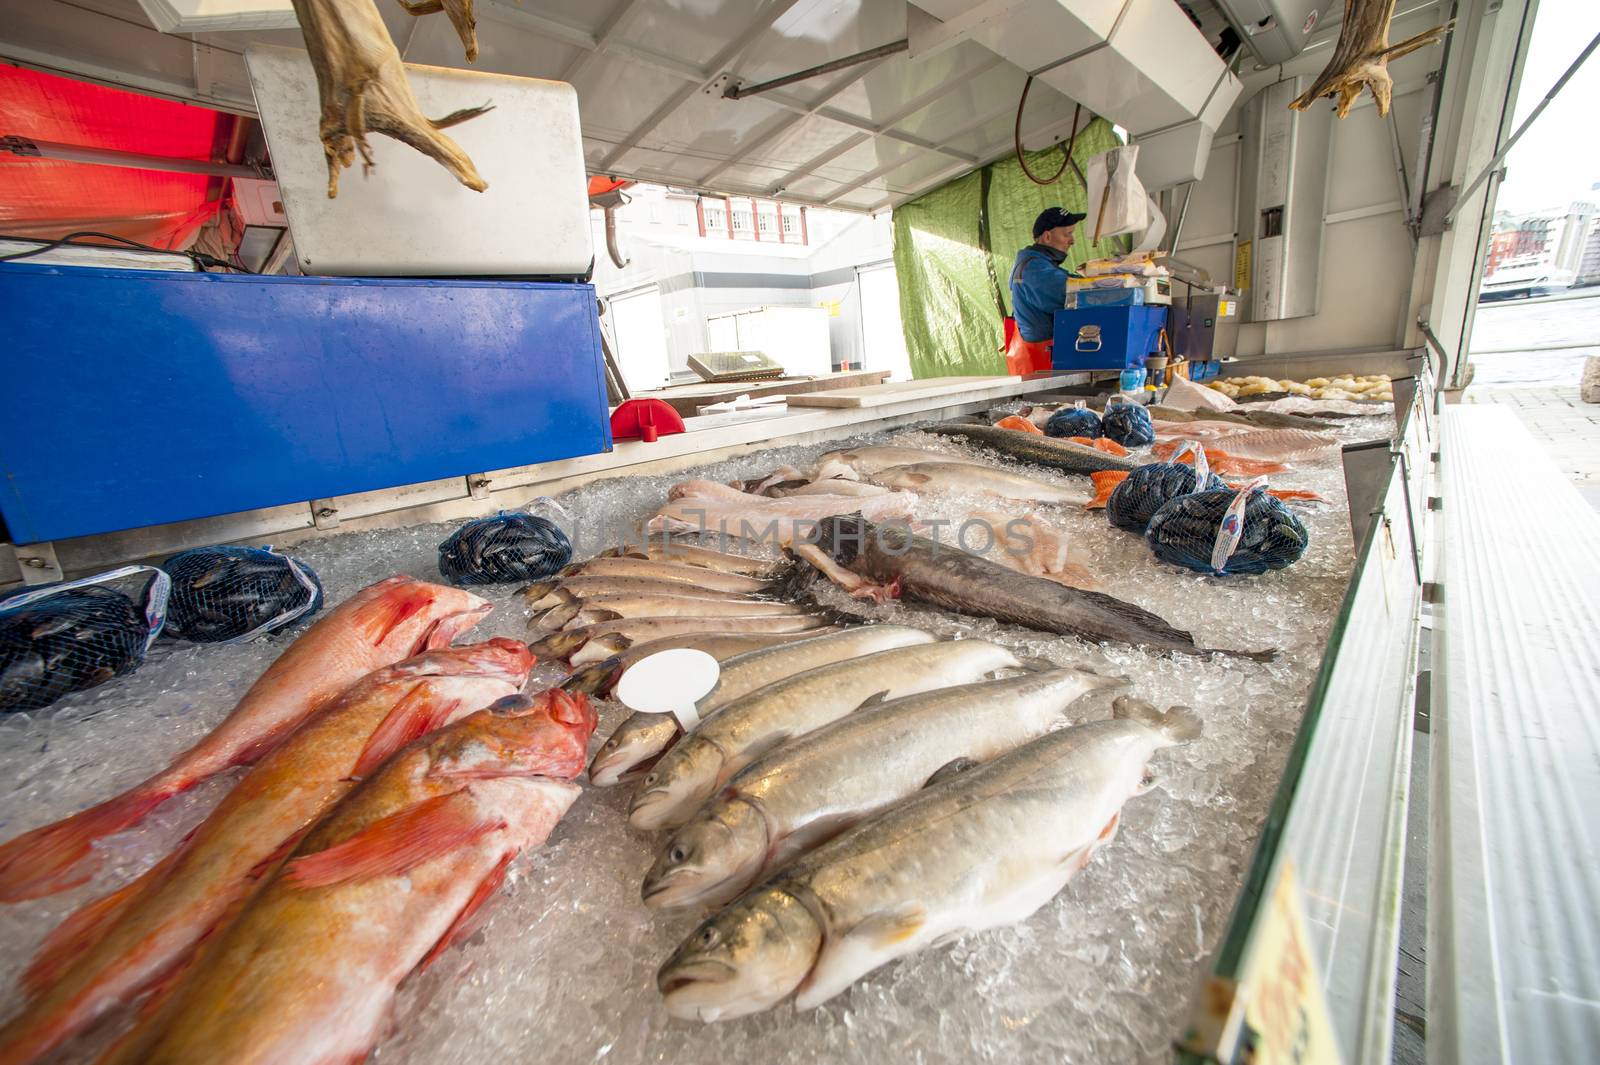 Bergen fish market by Alenmax